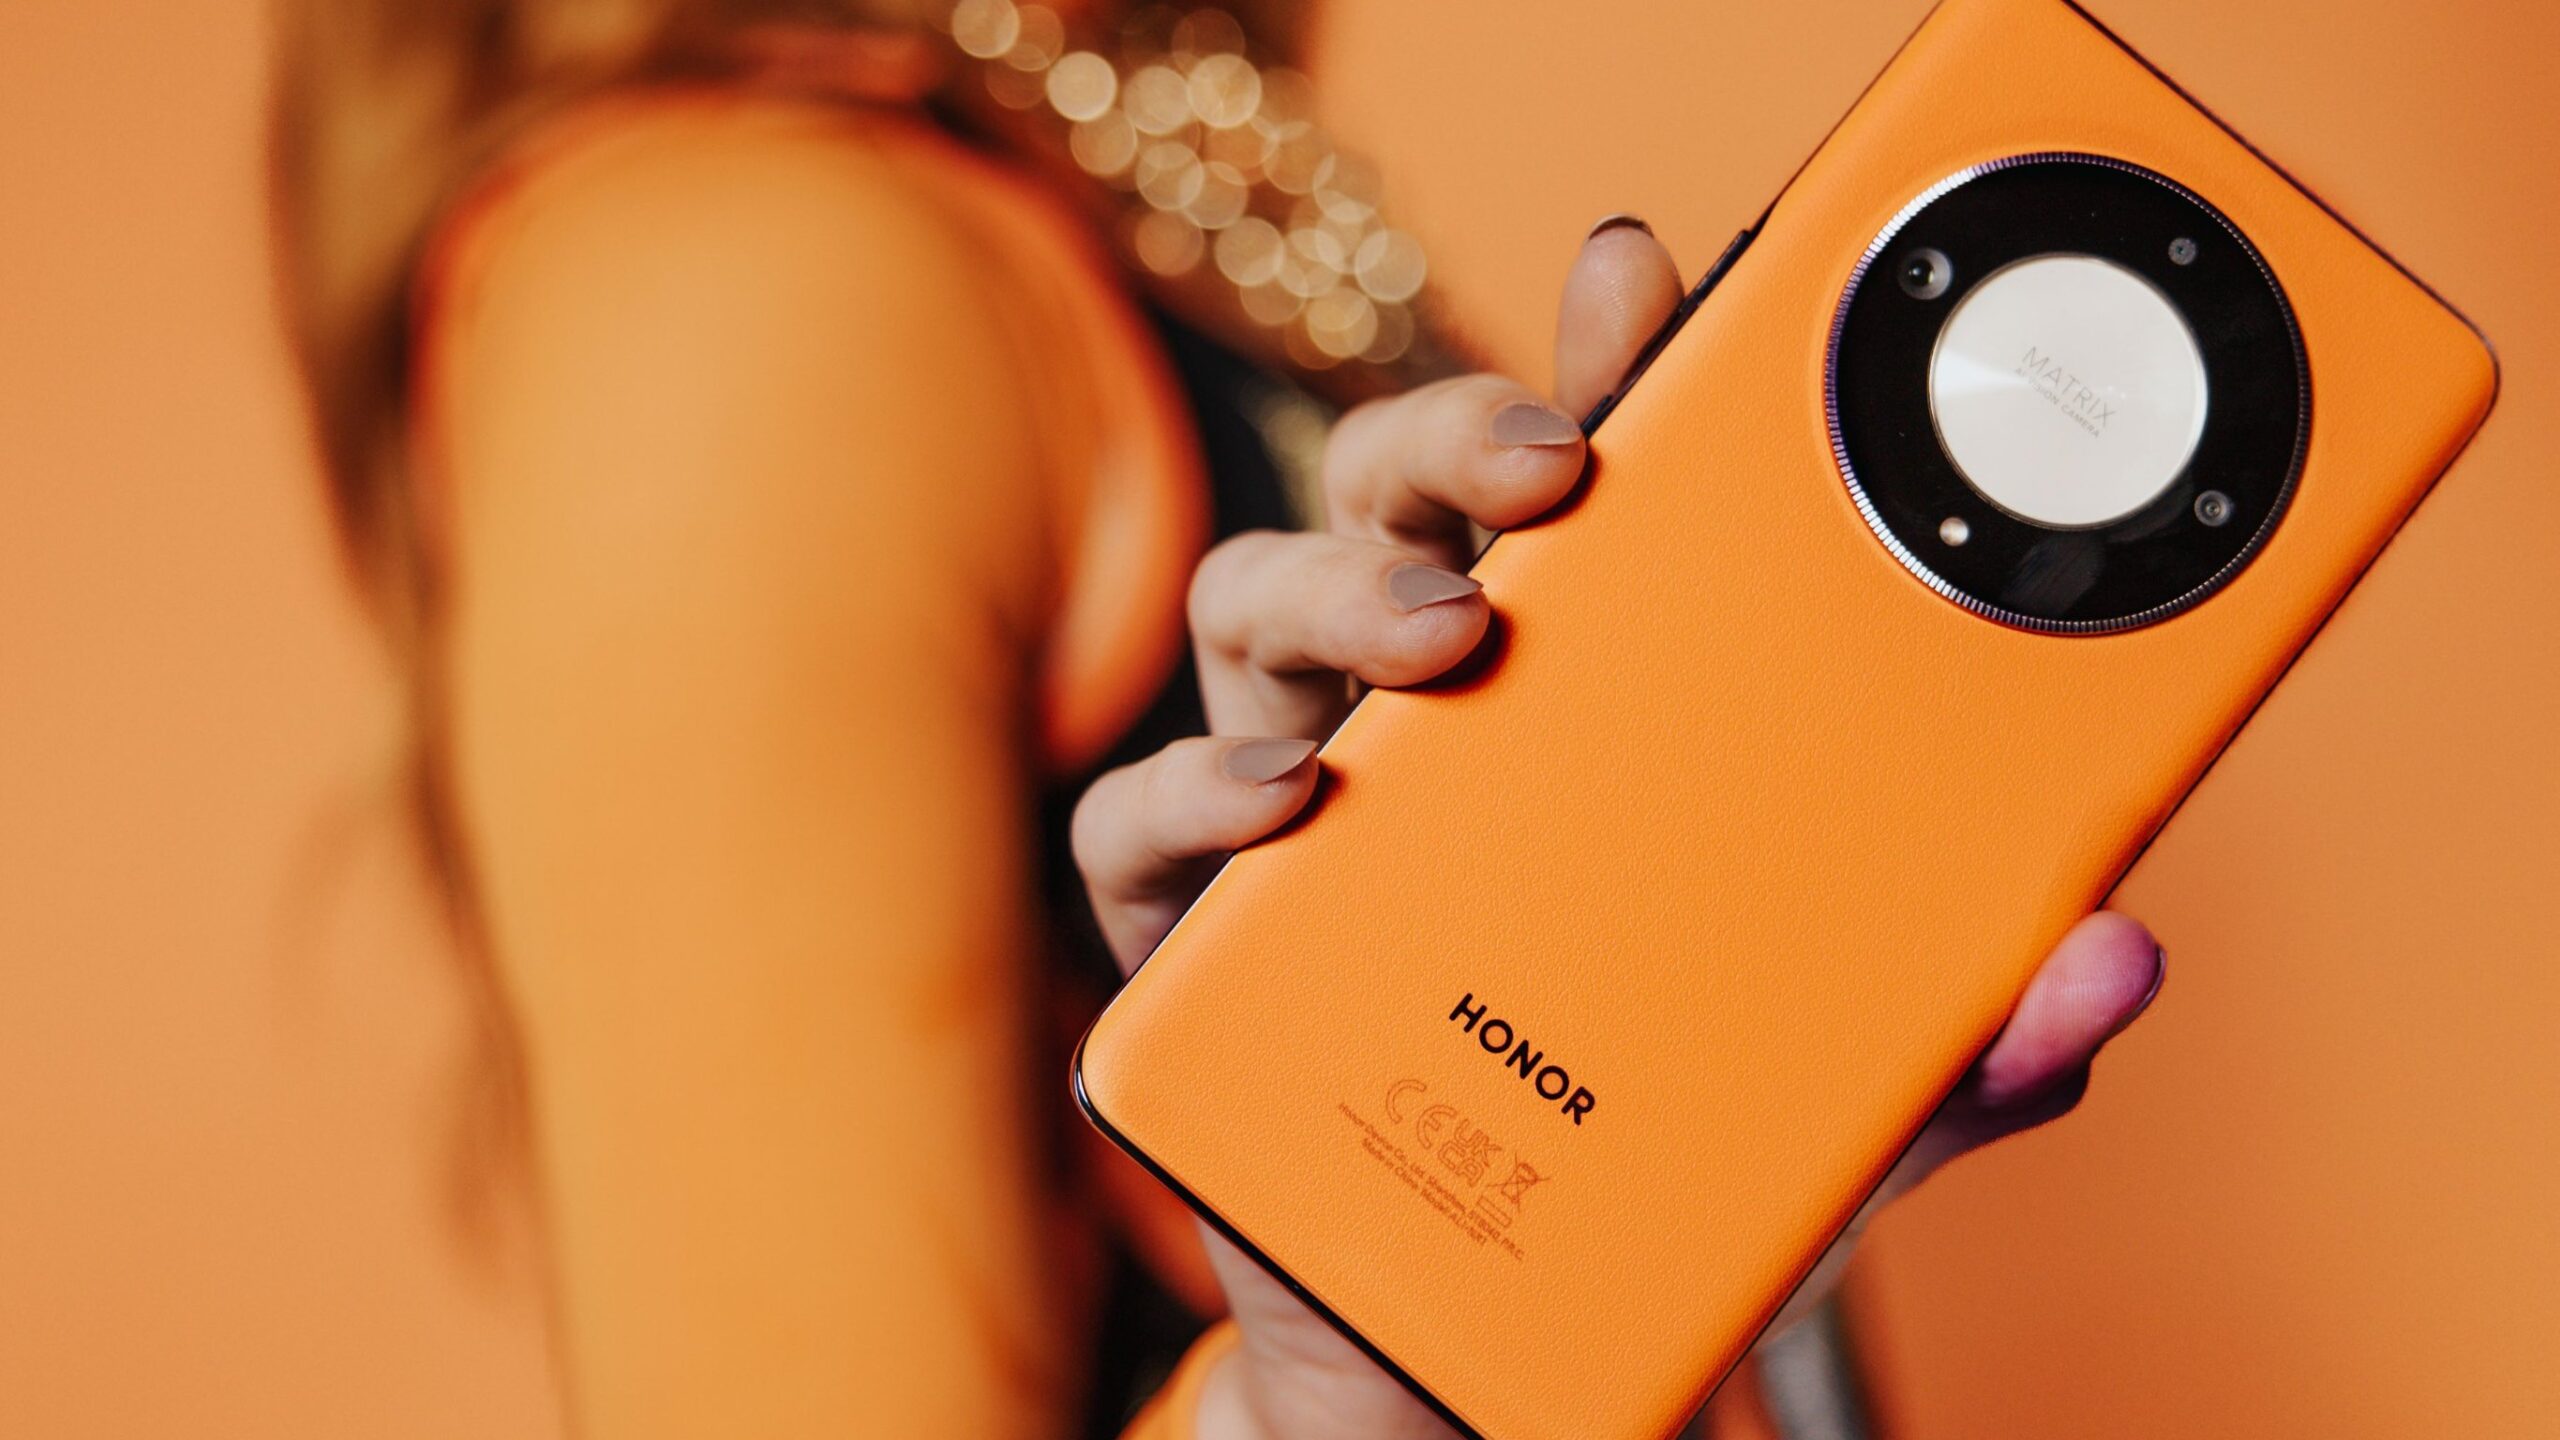 Osoba trzymająca pomarańczowy smartfon Honor z okrągłym modułem aparatu.